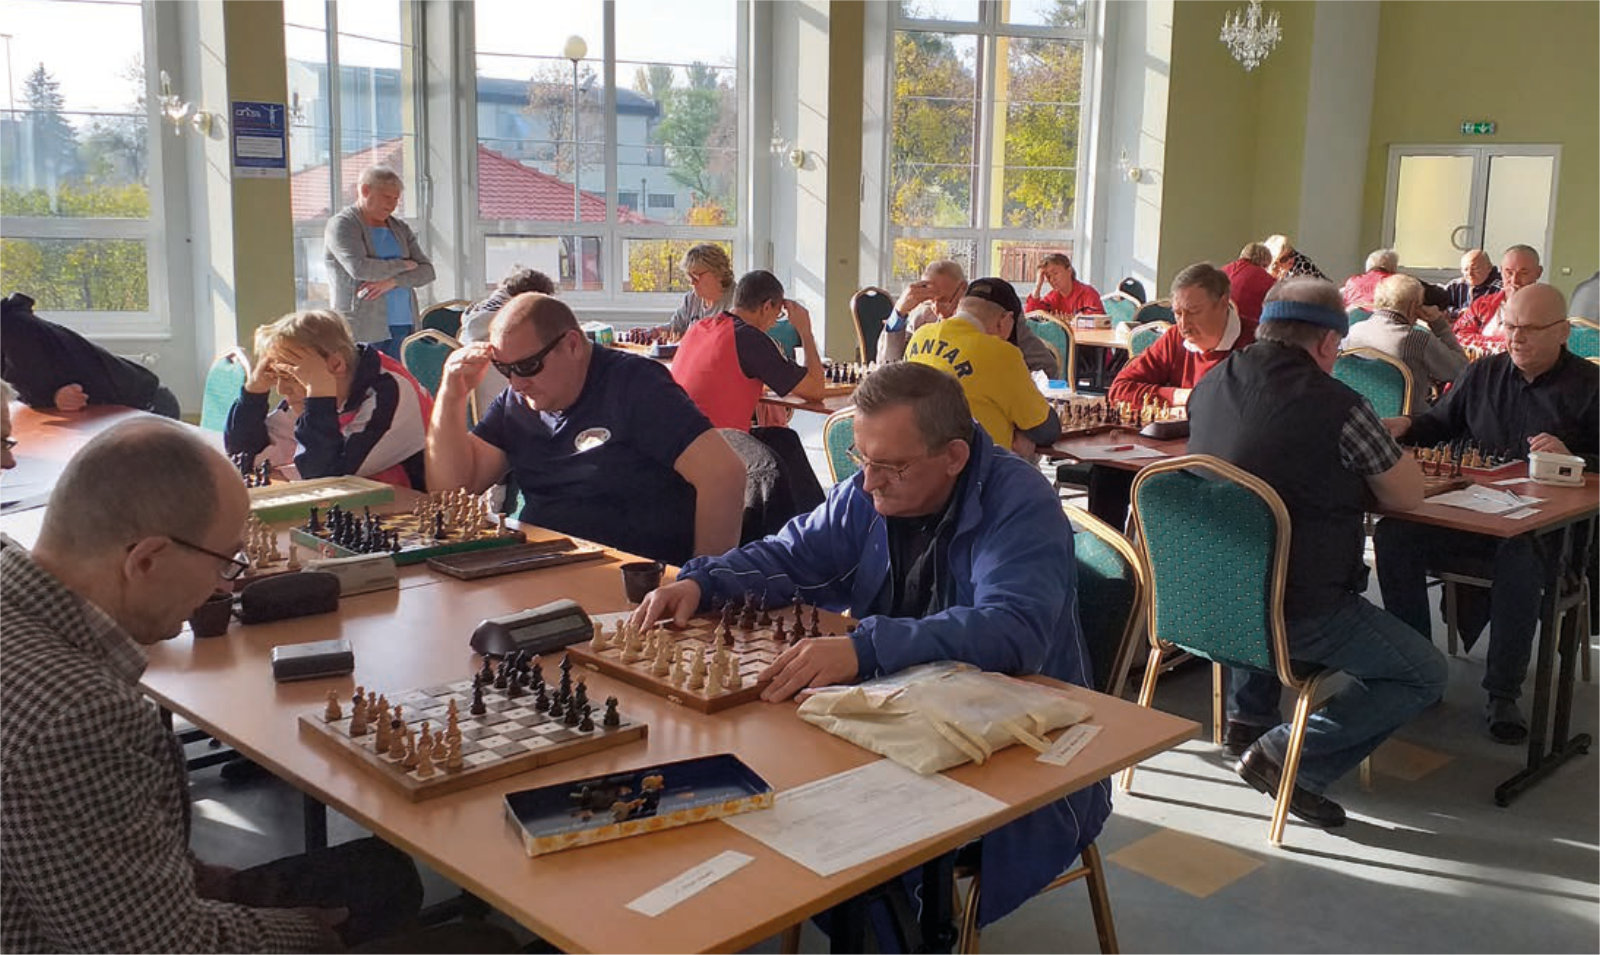 Osoby grające w szachy przy stolikach